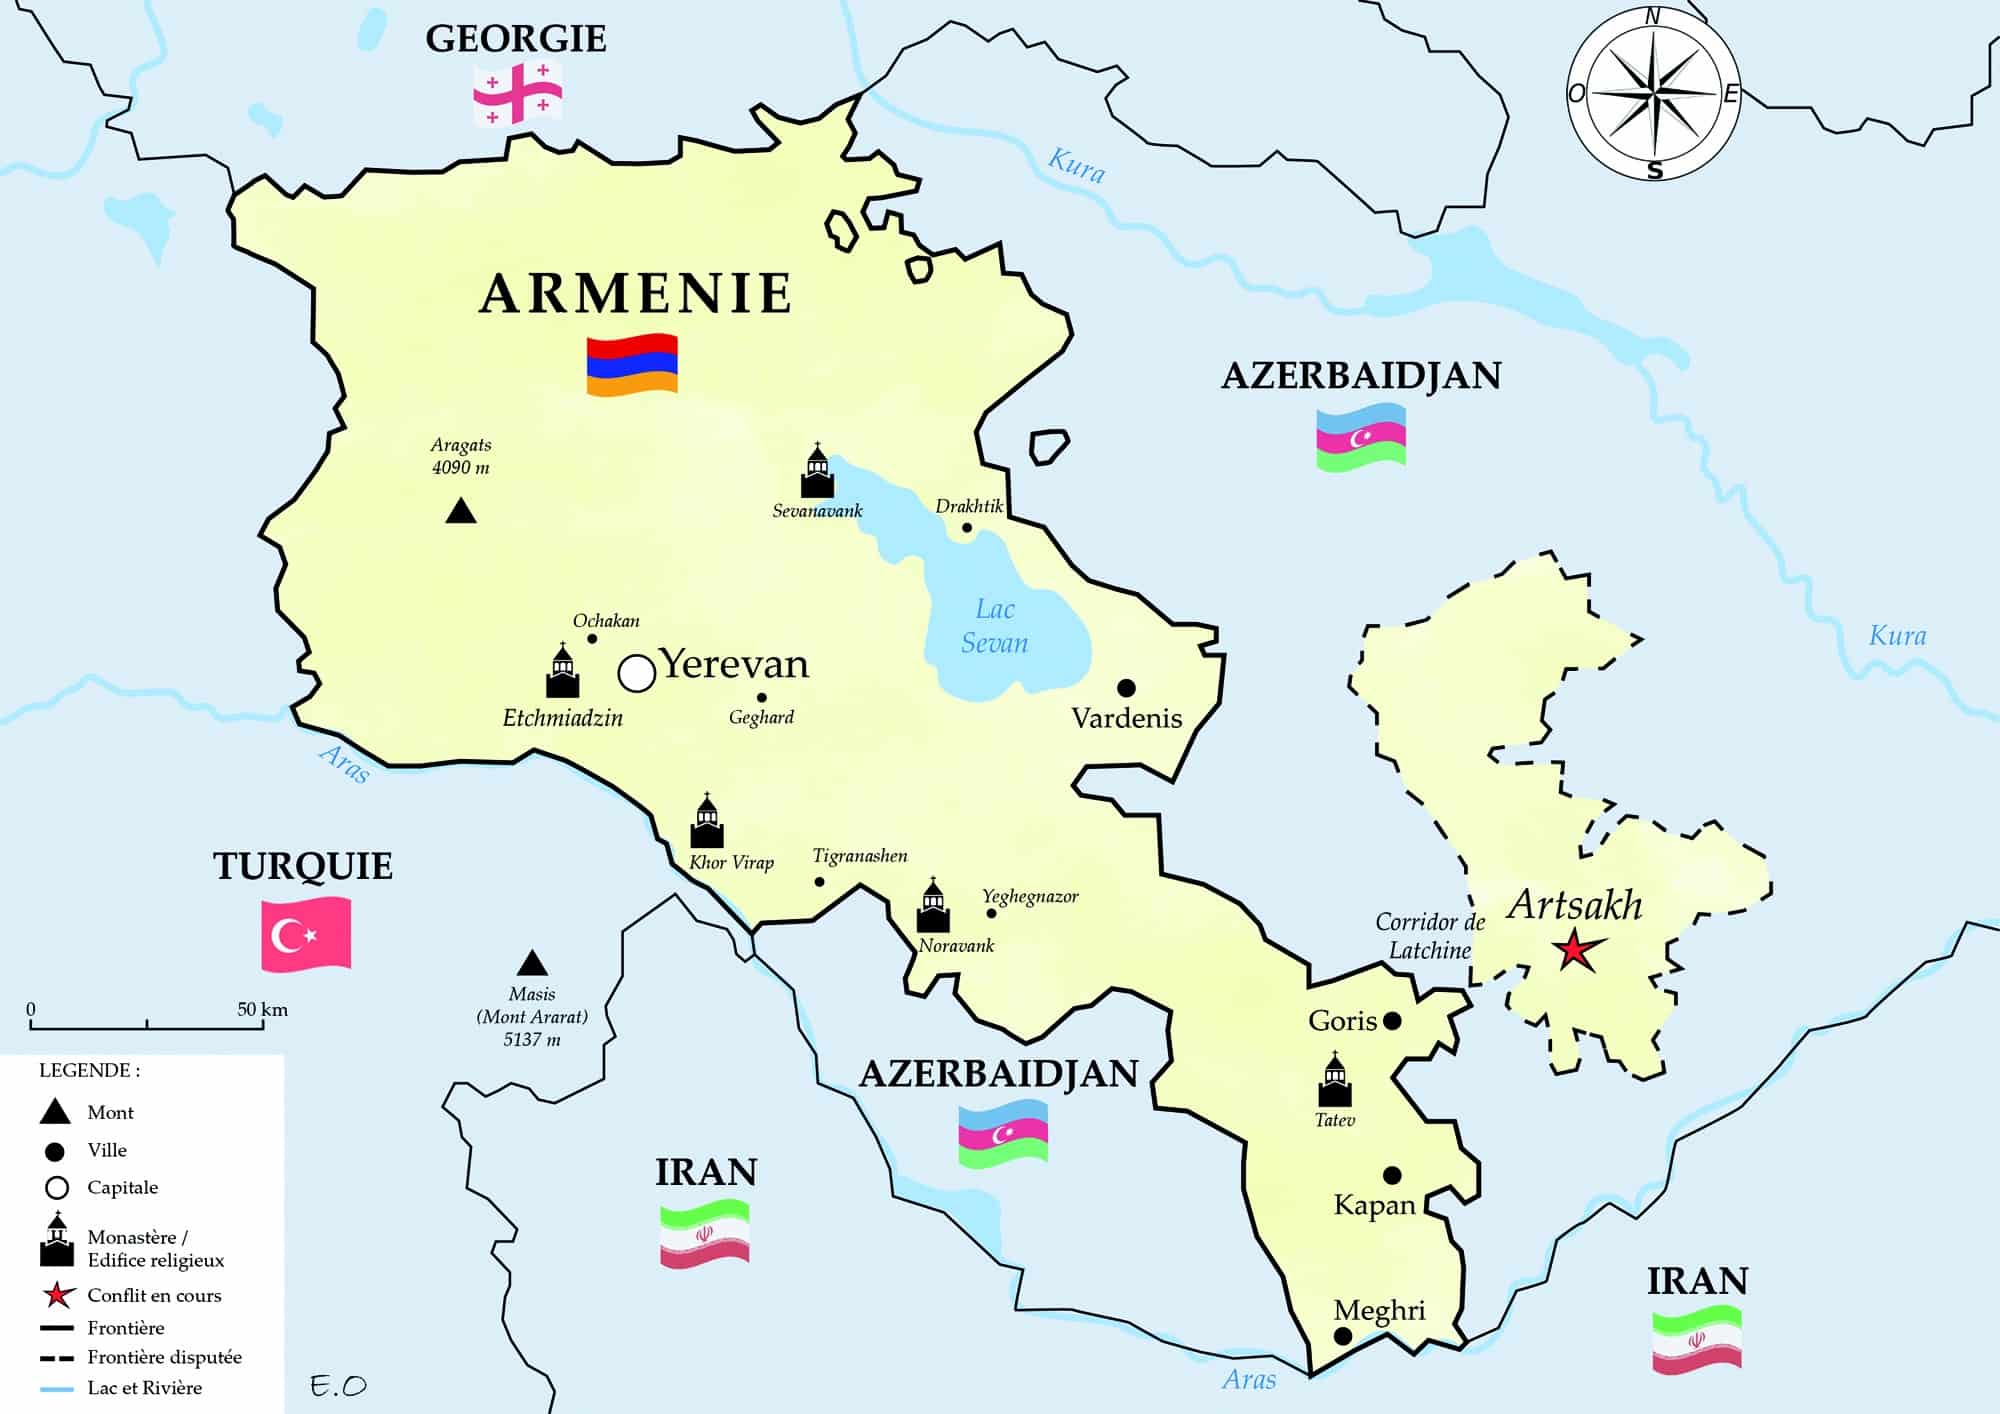 Arménie : Qui veut asphyxier l’Artsakh ? Entretien Buisson